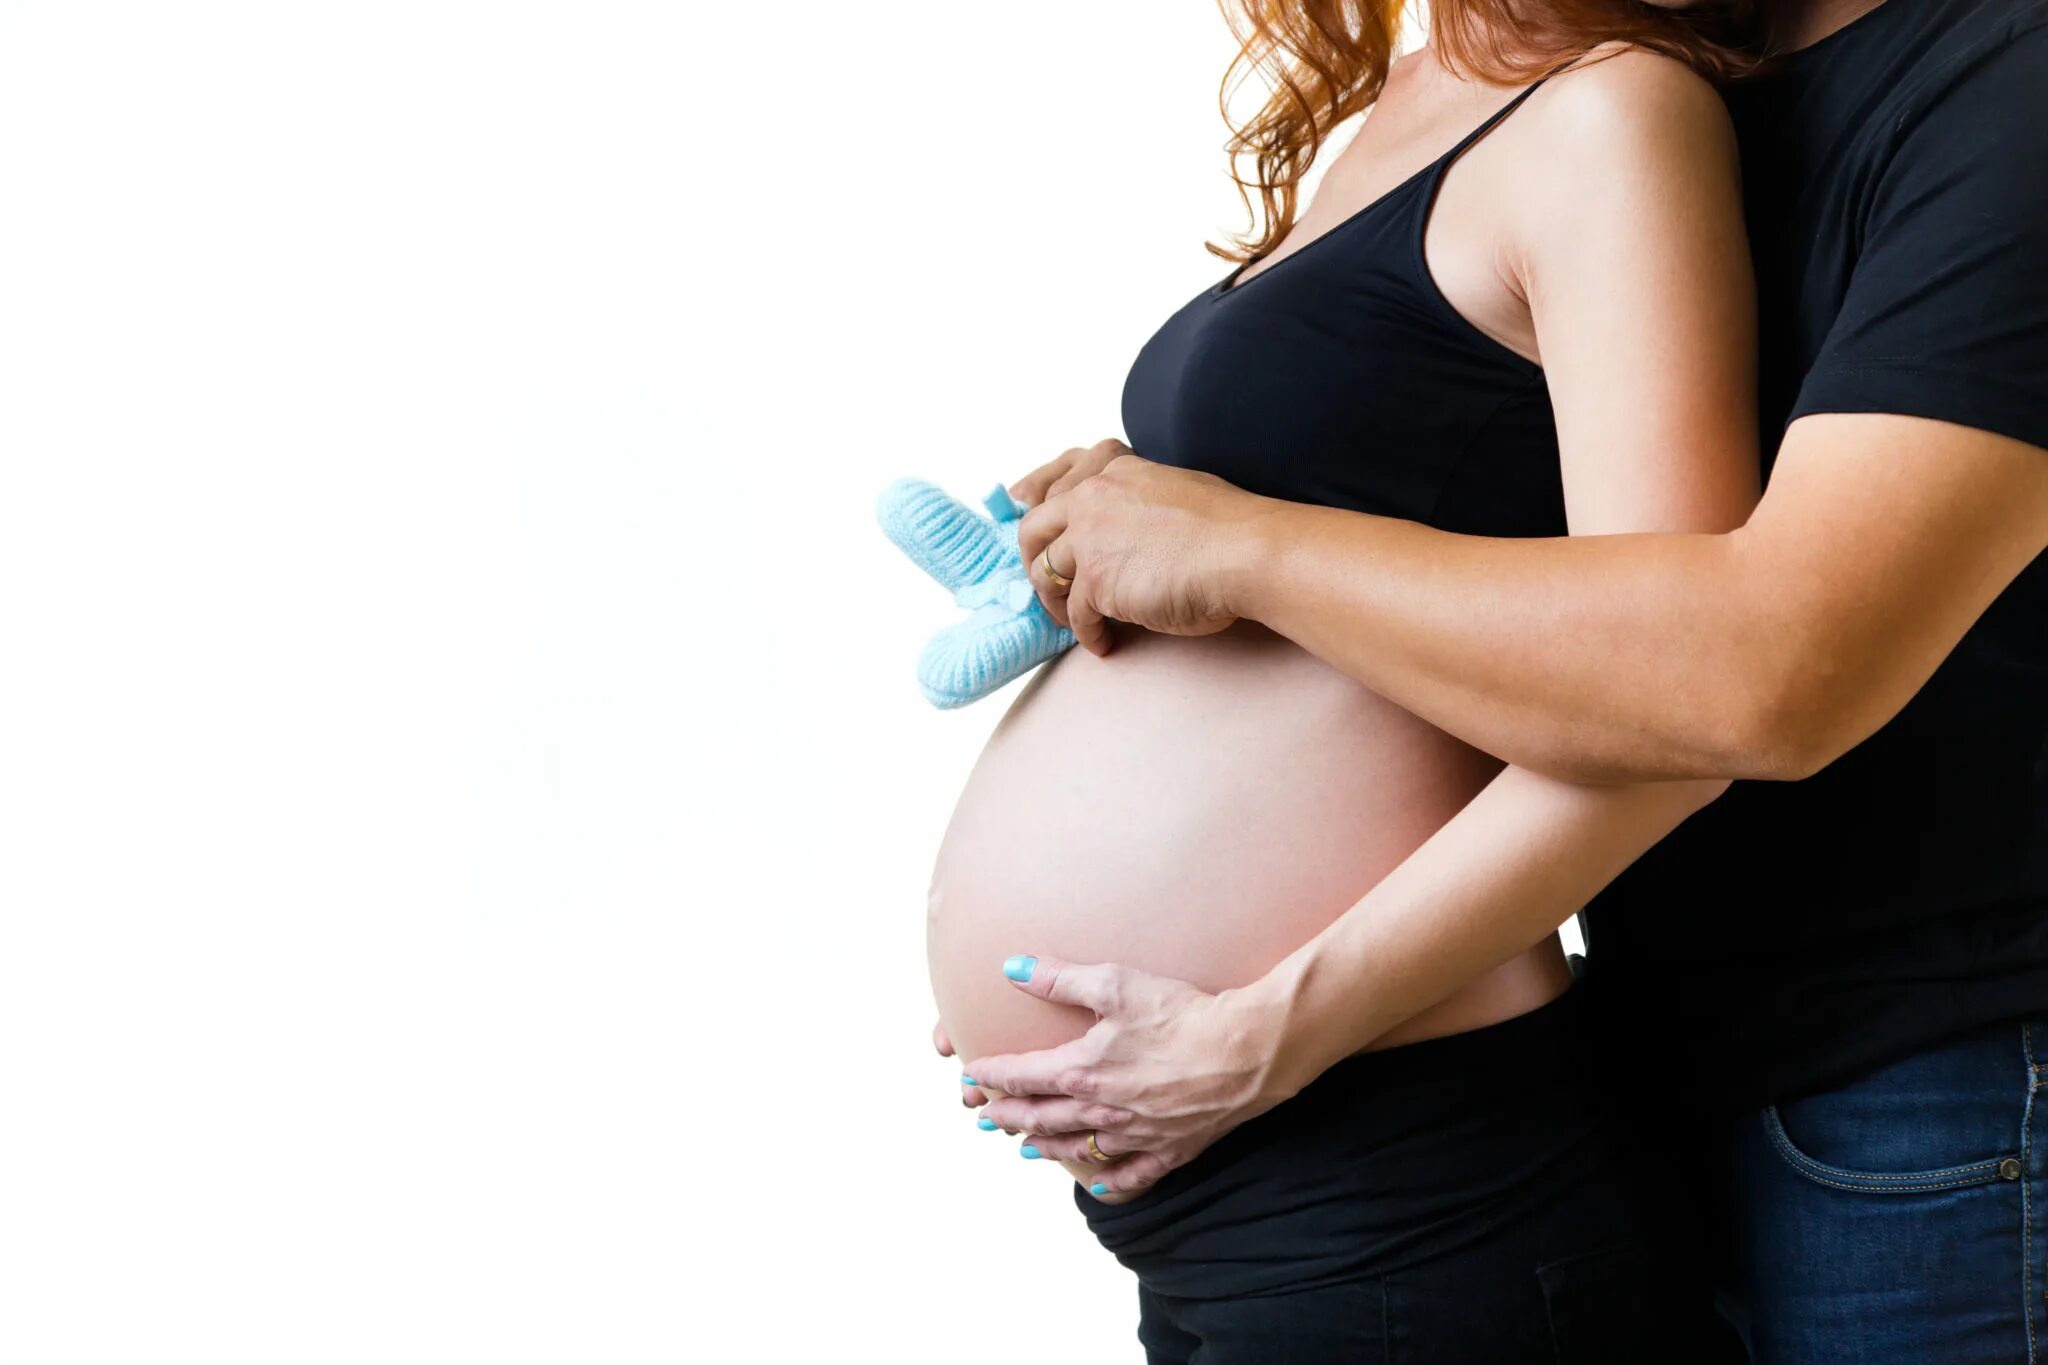 Мужчина перед планированием беременности. Исследование беременных. Анализ беременности. Беременность при планировании беременности.